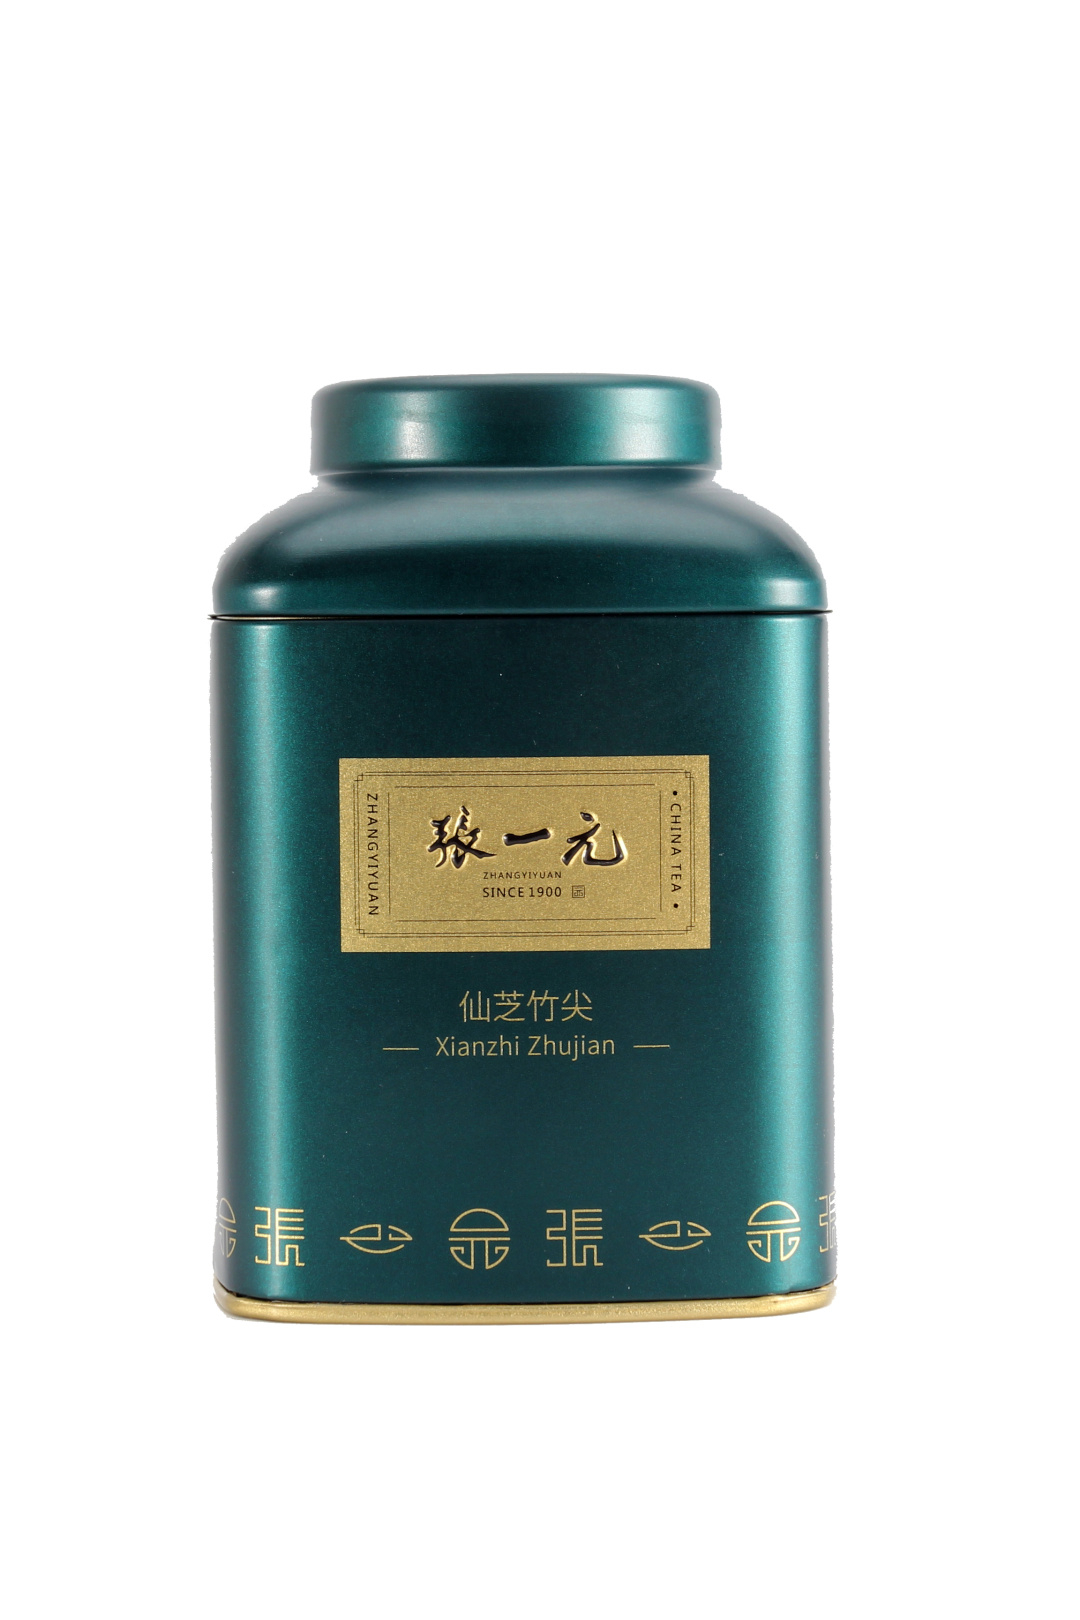 【绿茶展卖季 包邮】张一元茶叶 经典系列 绿茶 仙芝竹尖 桶装 40g